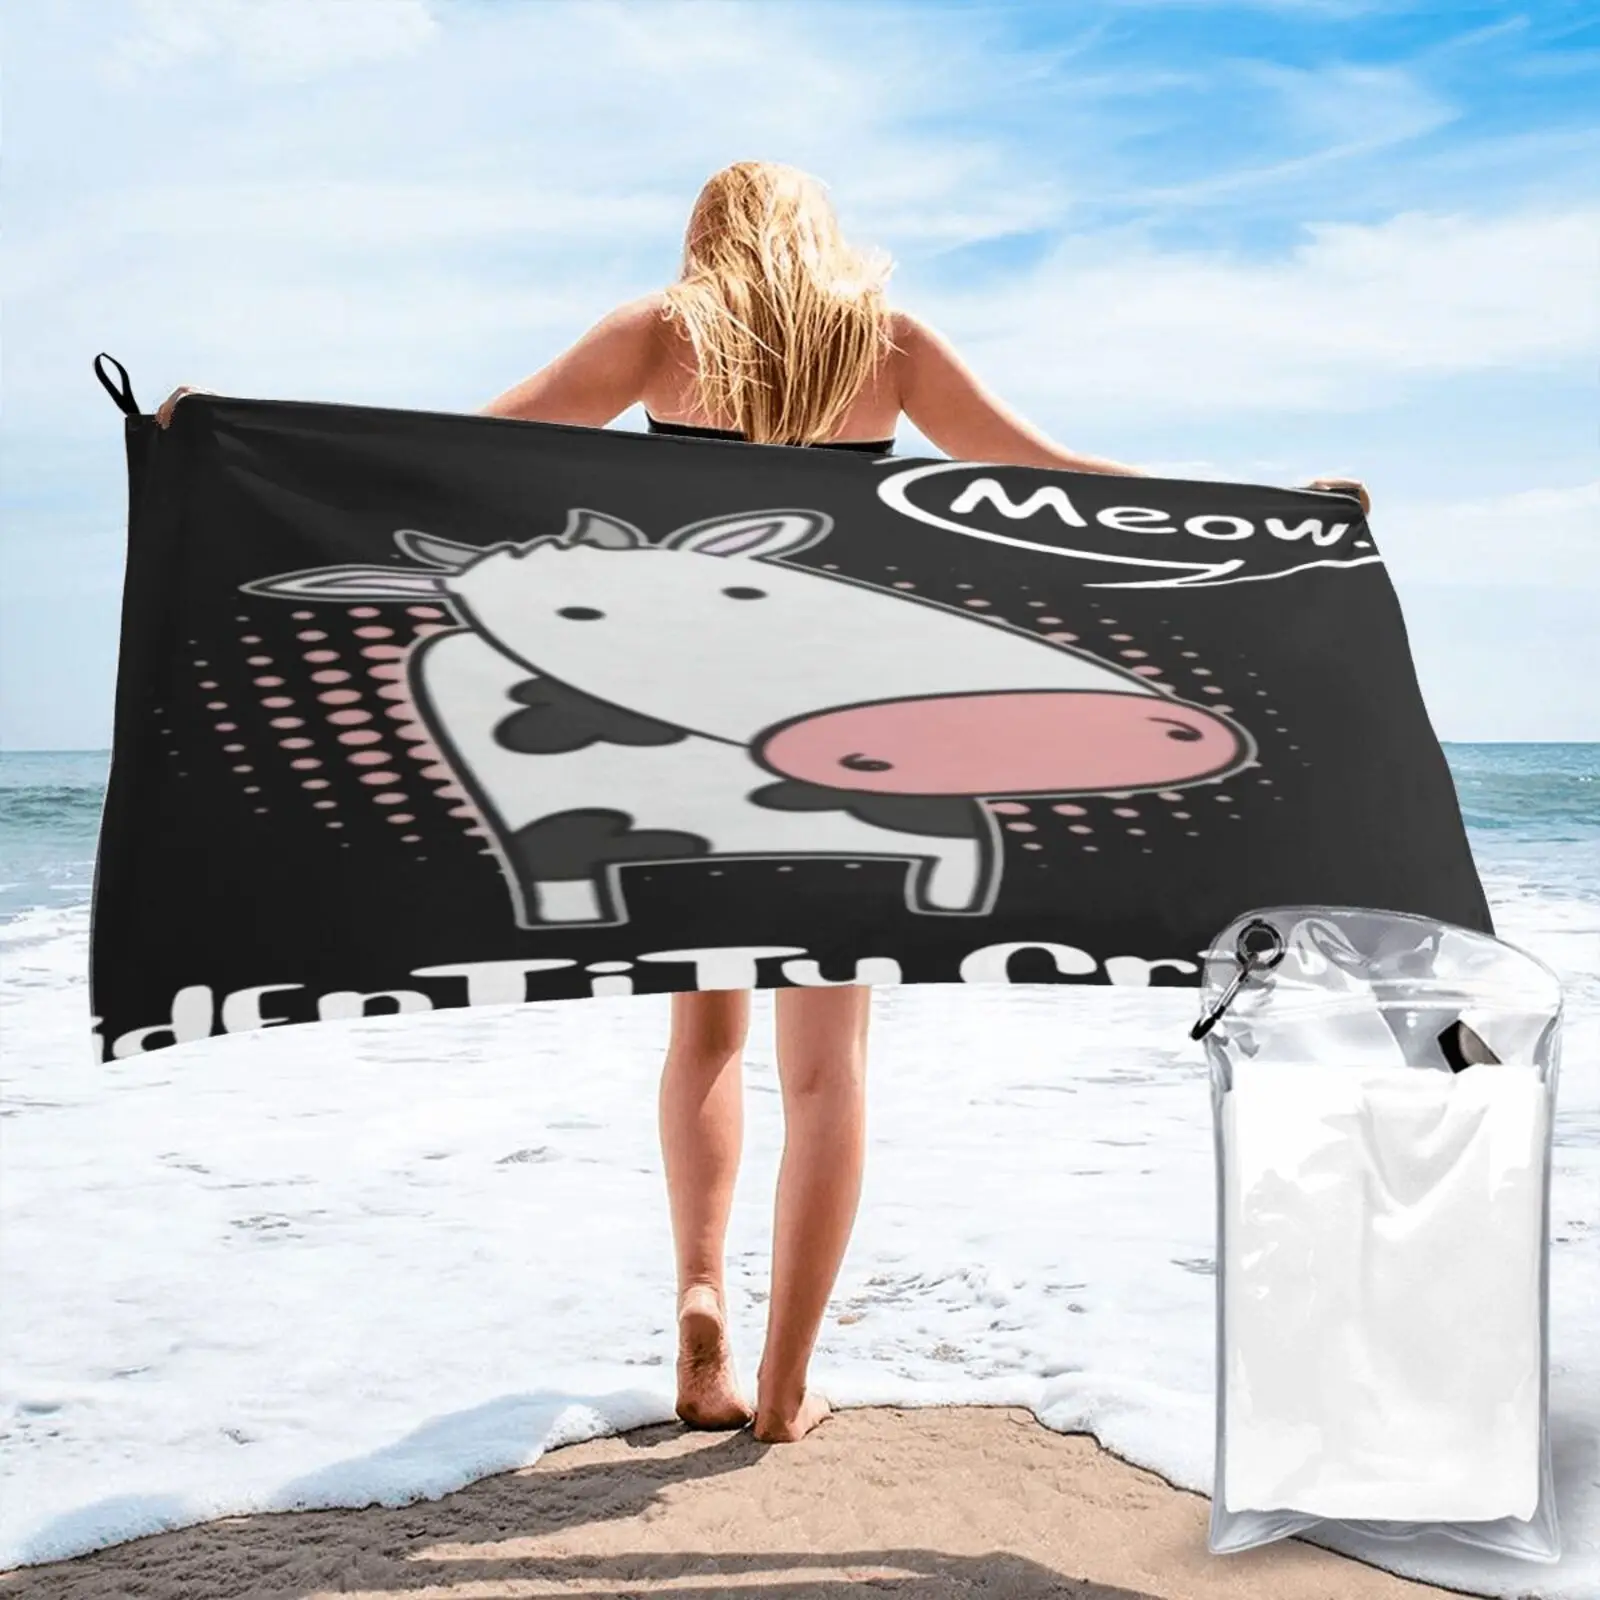 

Пляжное полотенце из микрофибры 1Tee с имитацией бычьего мяка, пляжное полотенце Xxl, пляжное полотенце для ванны, Большое пляжное полотенце s